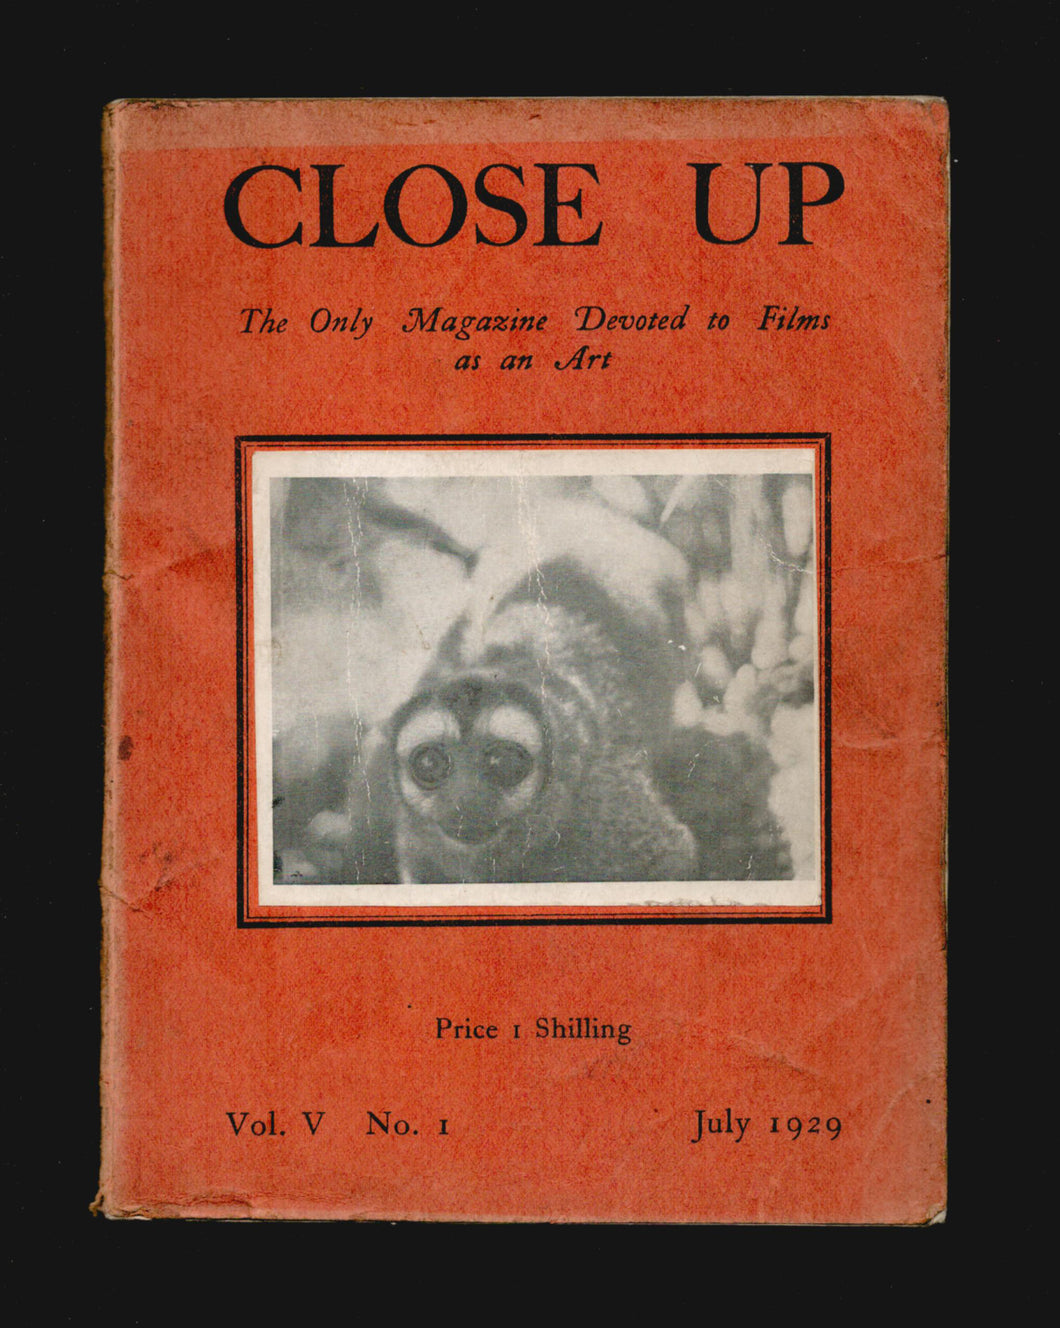 Close Up Vol 5 No 1 July 1929